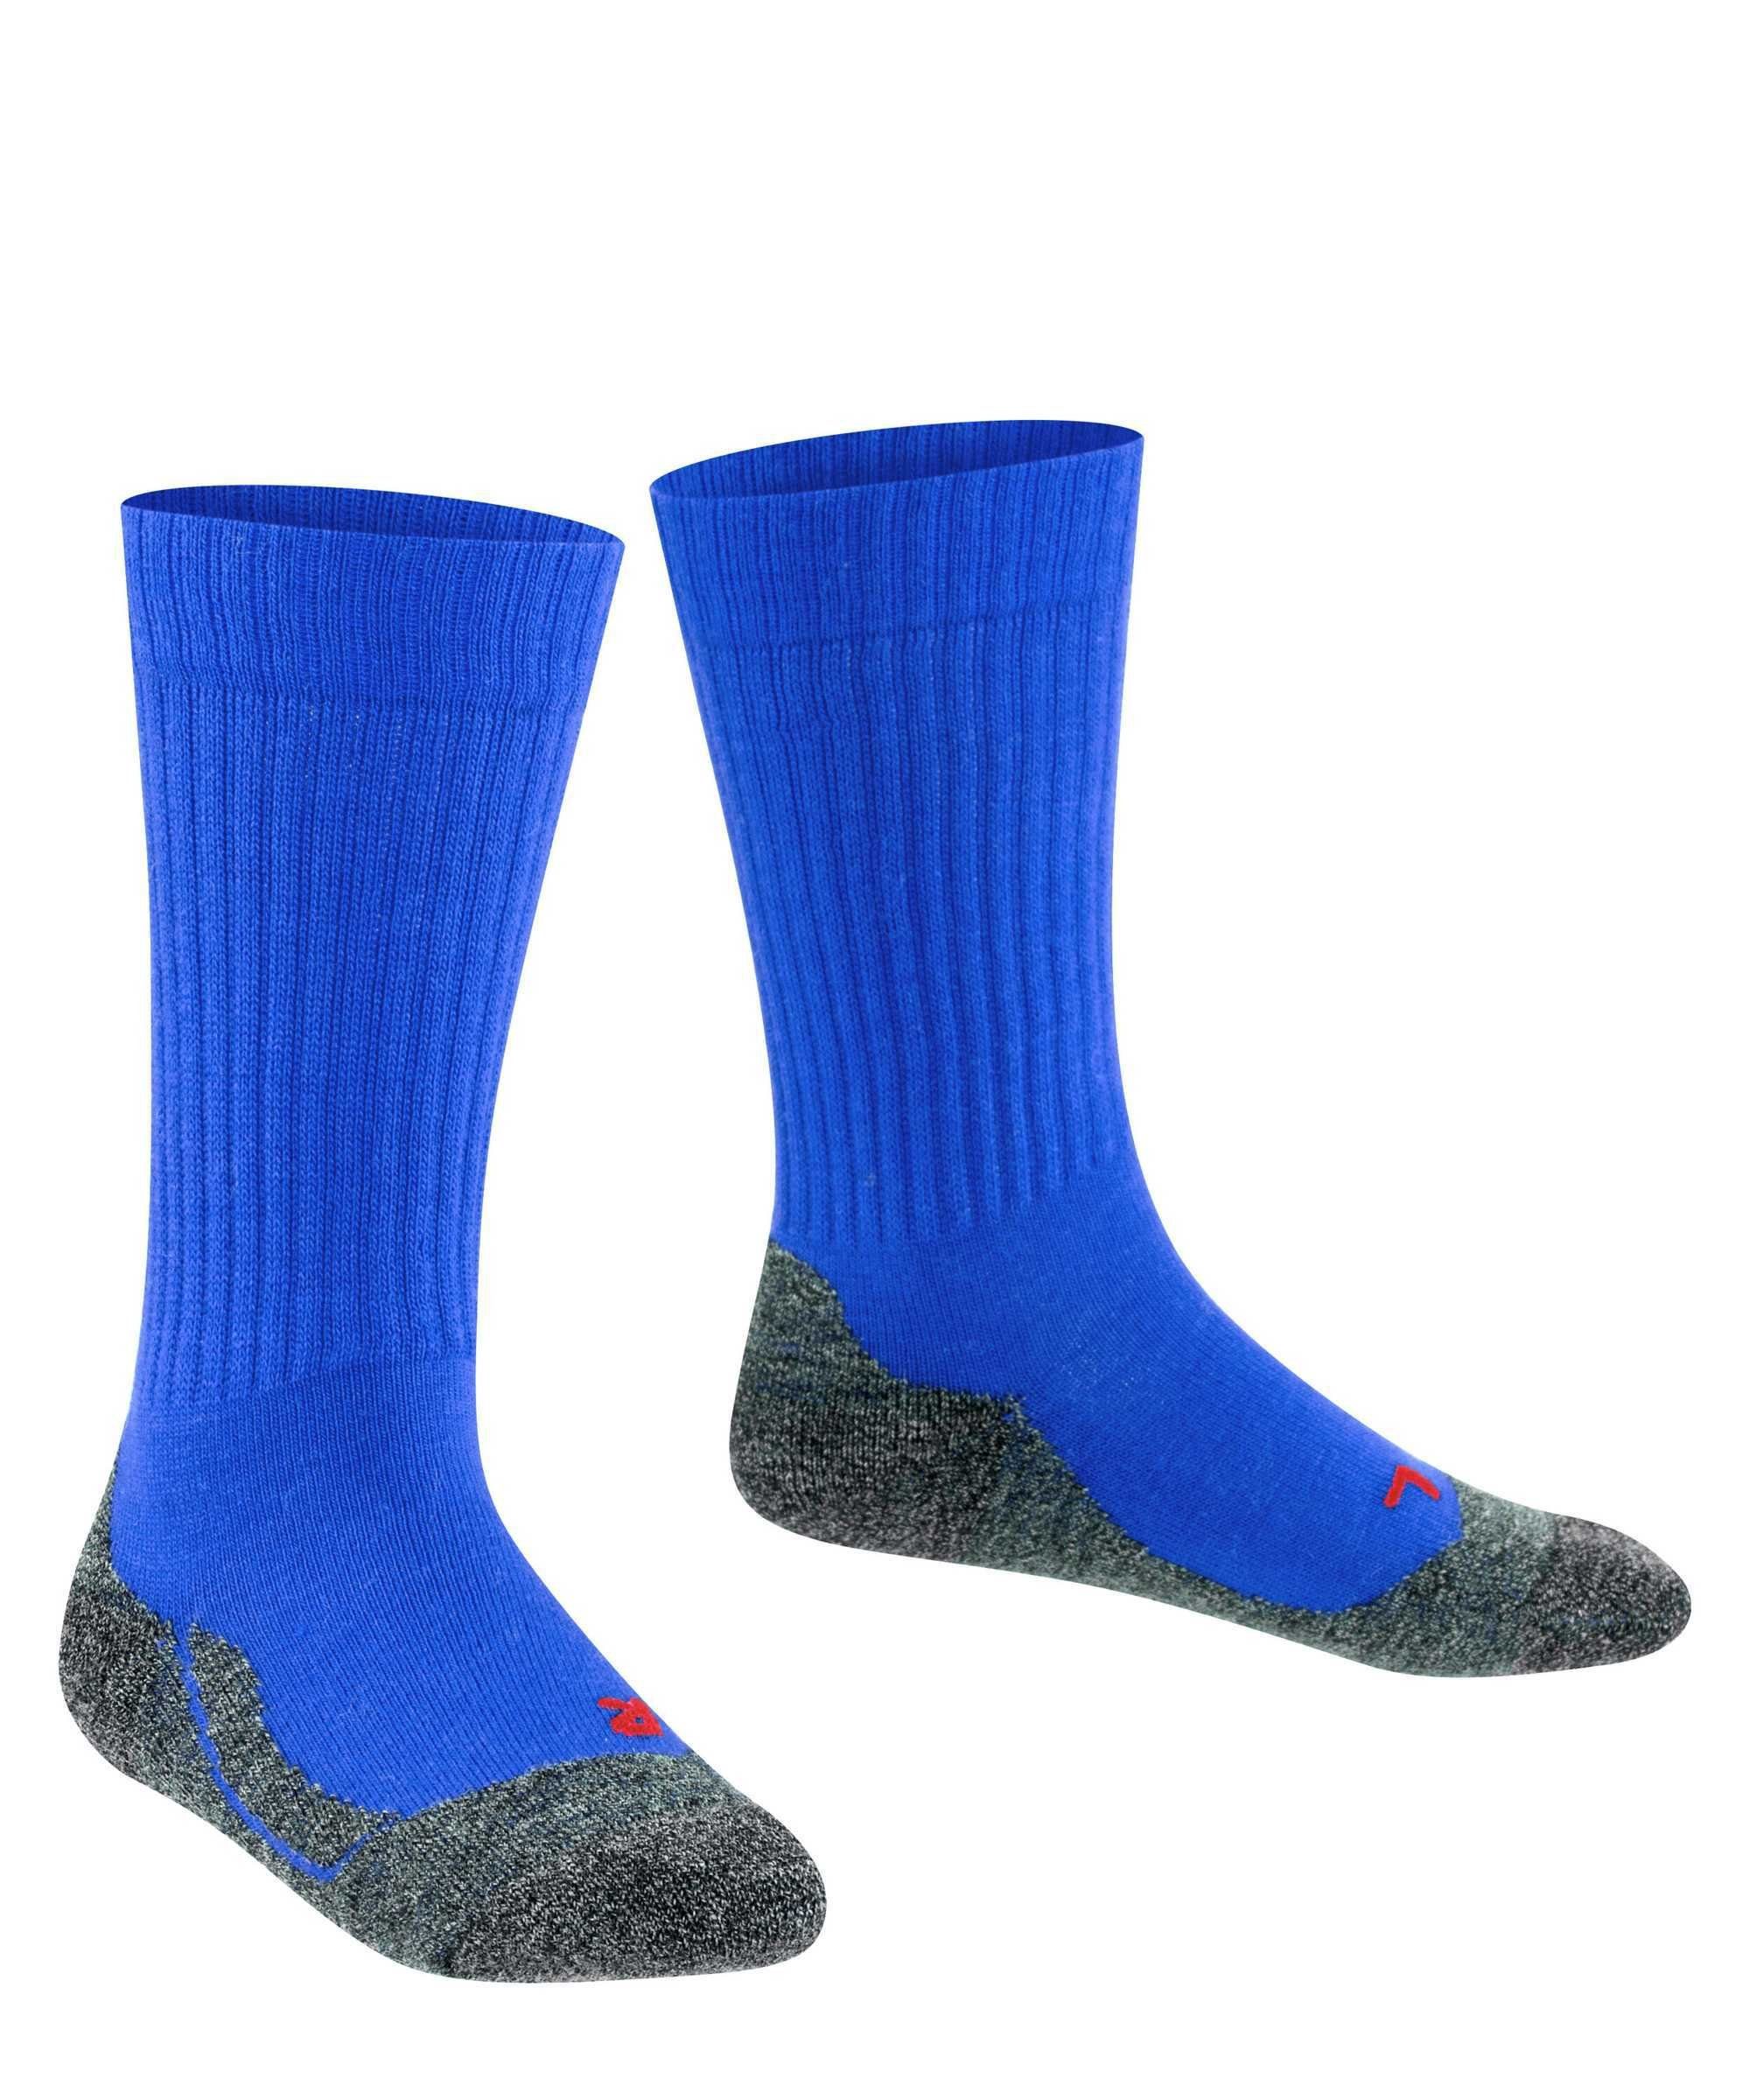 Blau Kurzsocken FALKE Warm, Freizeitsocken Active Socken Kinder -